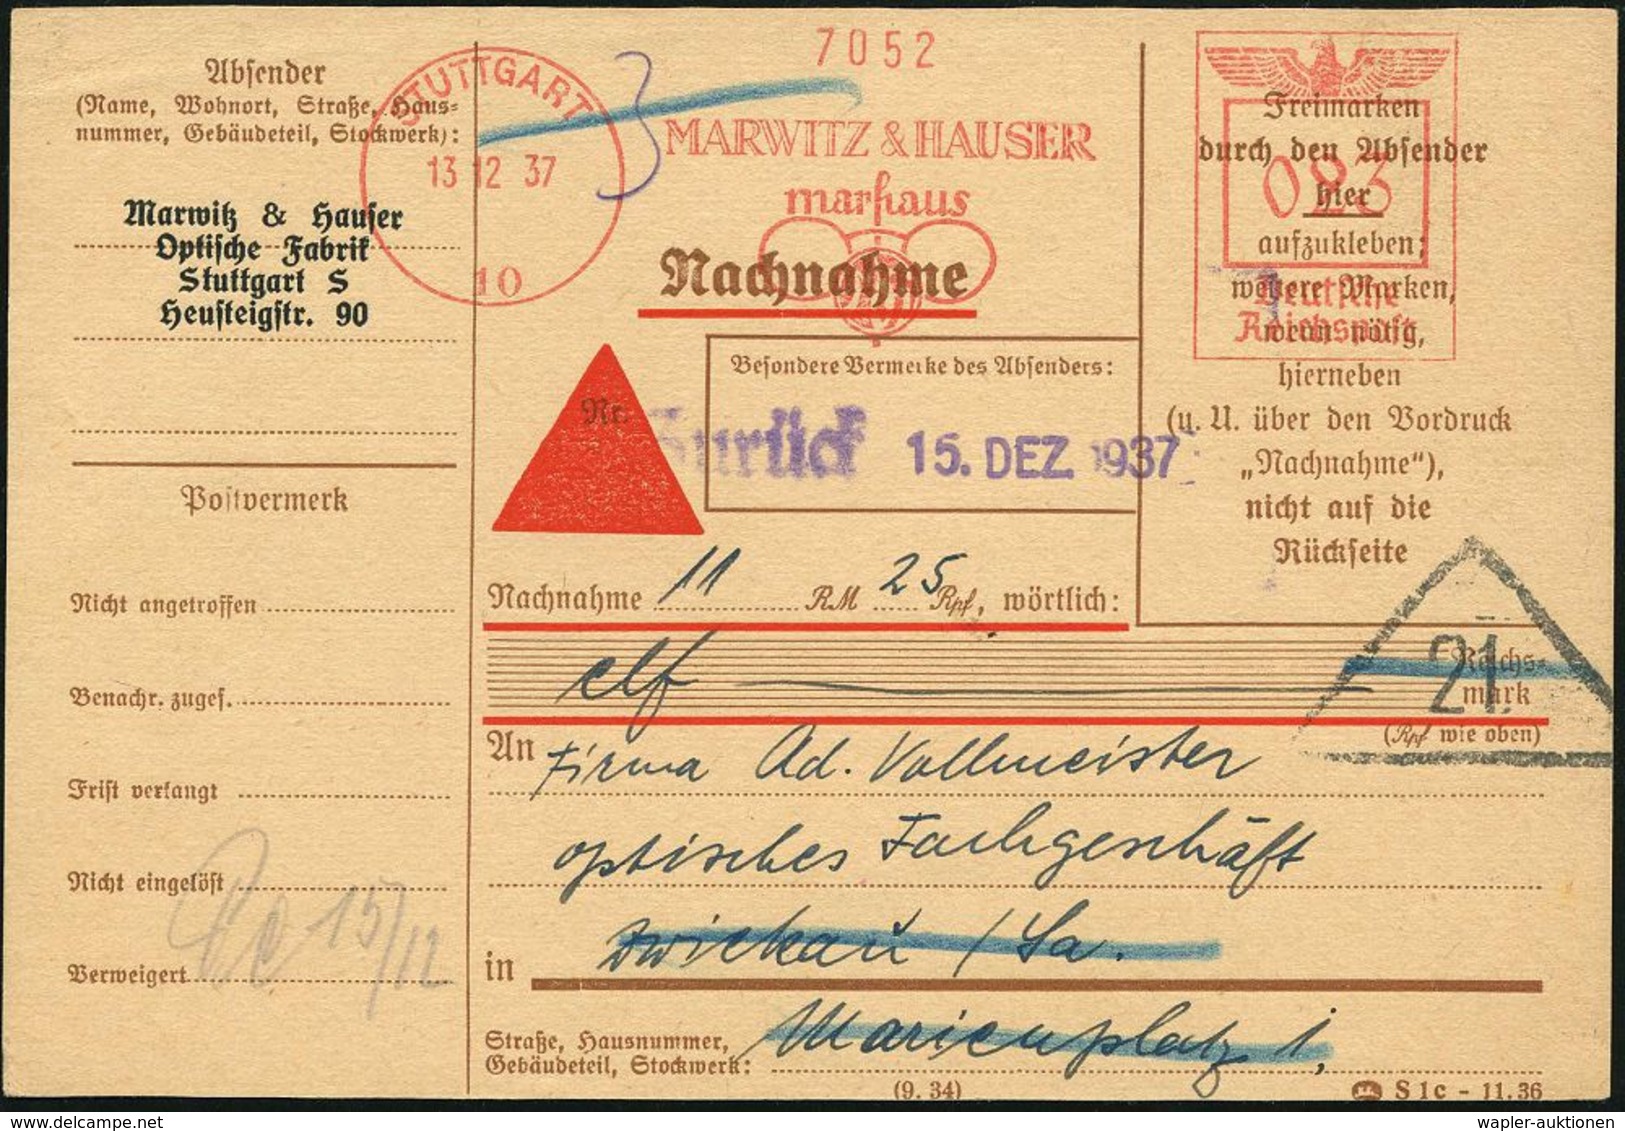 OPTIK / GERÄTE / MIKROSKOP / BRILLE / LICHT : STUTTGART/ 10/ MARWITZ & HAUSER/ Marhaus 1937 (13.12.) AFS 023 Pf. = Brill - Photographie